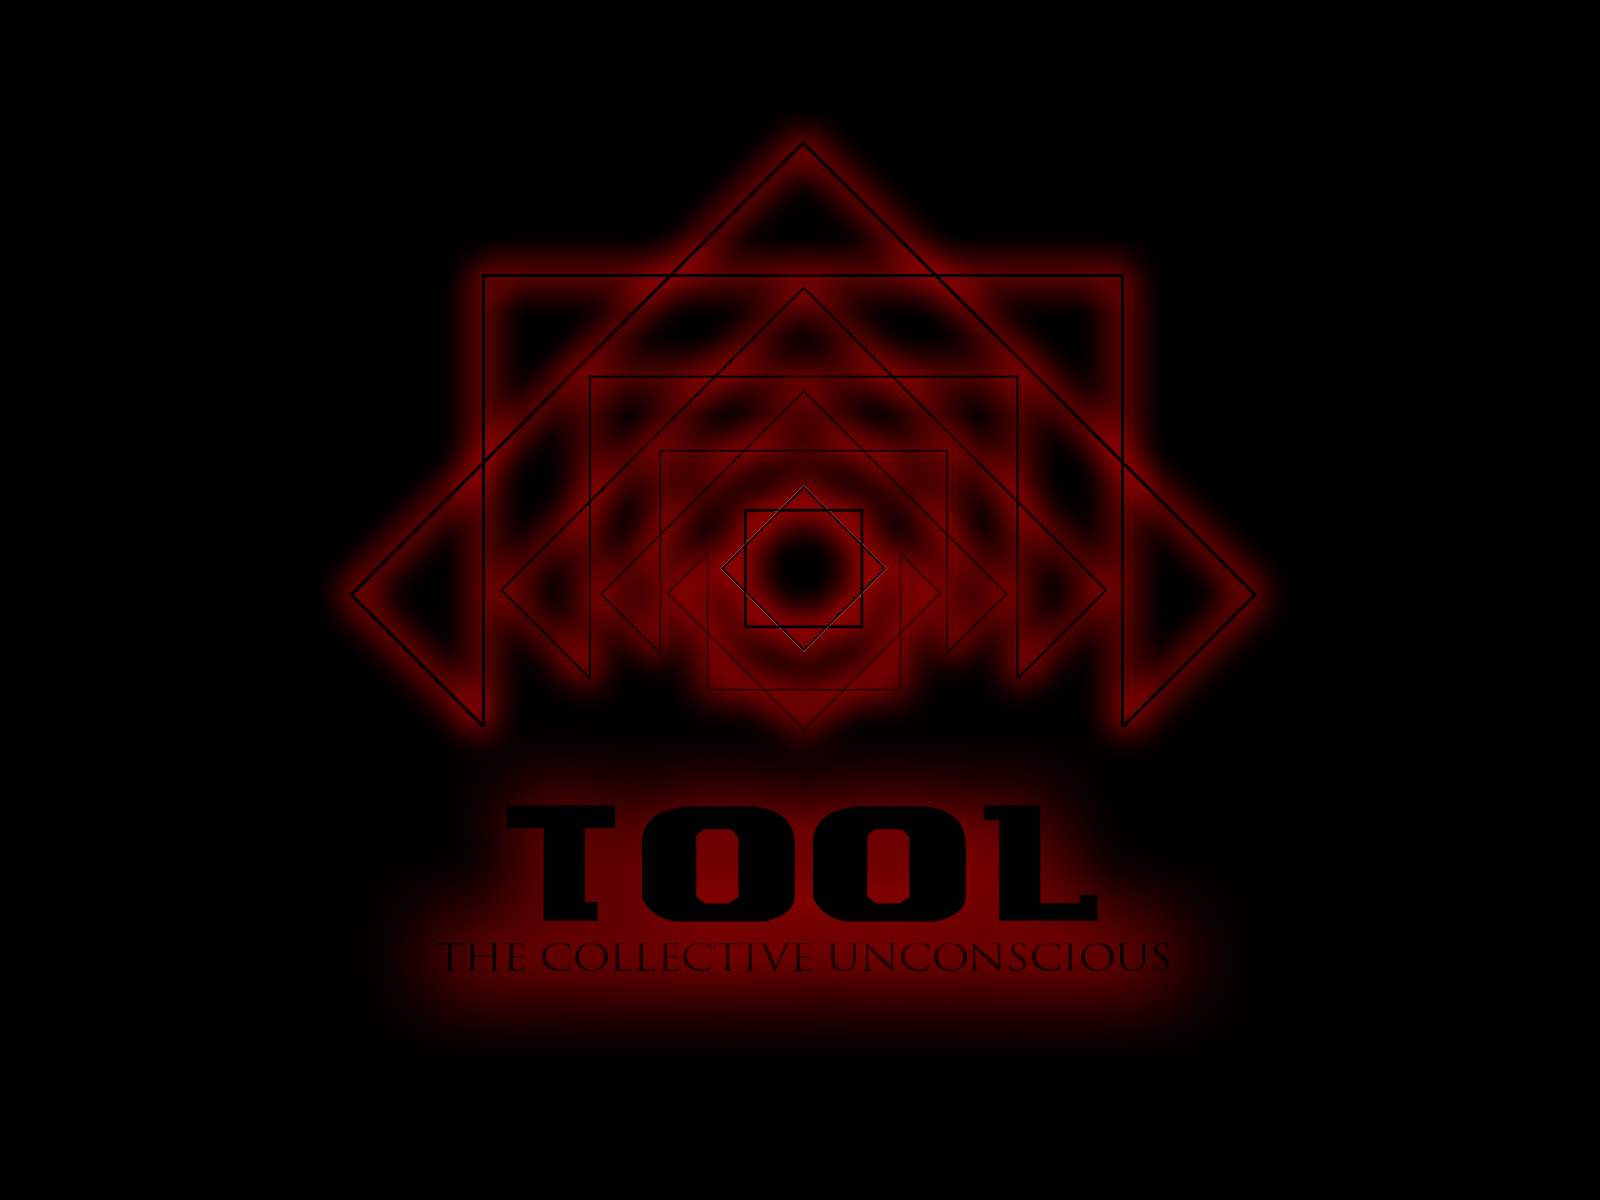 Tool